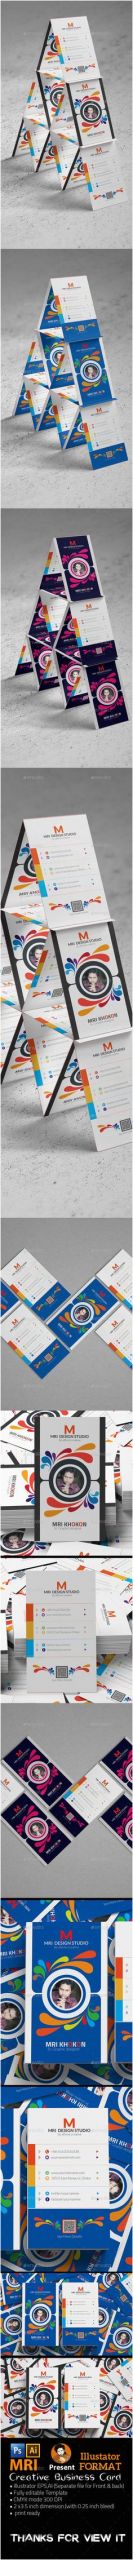 0d052e3ffa58fa7a33b09e3c2684e541 business card templates business cards jpg